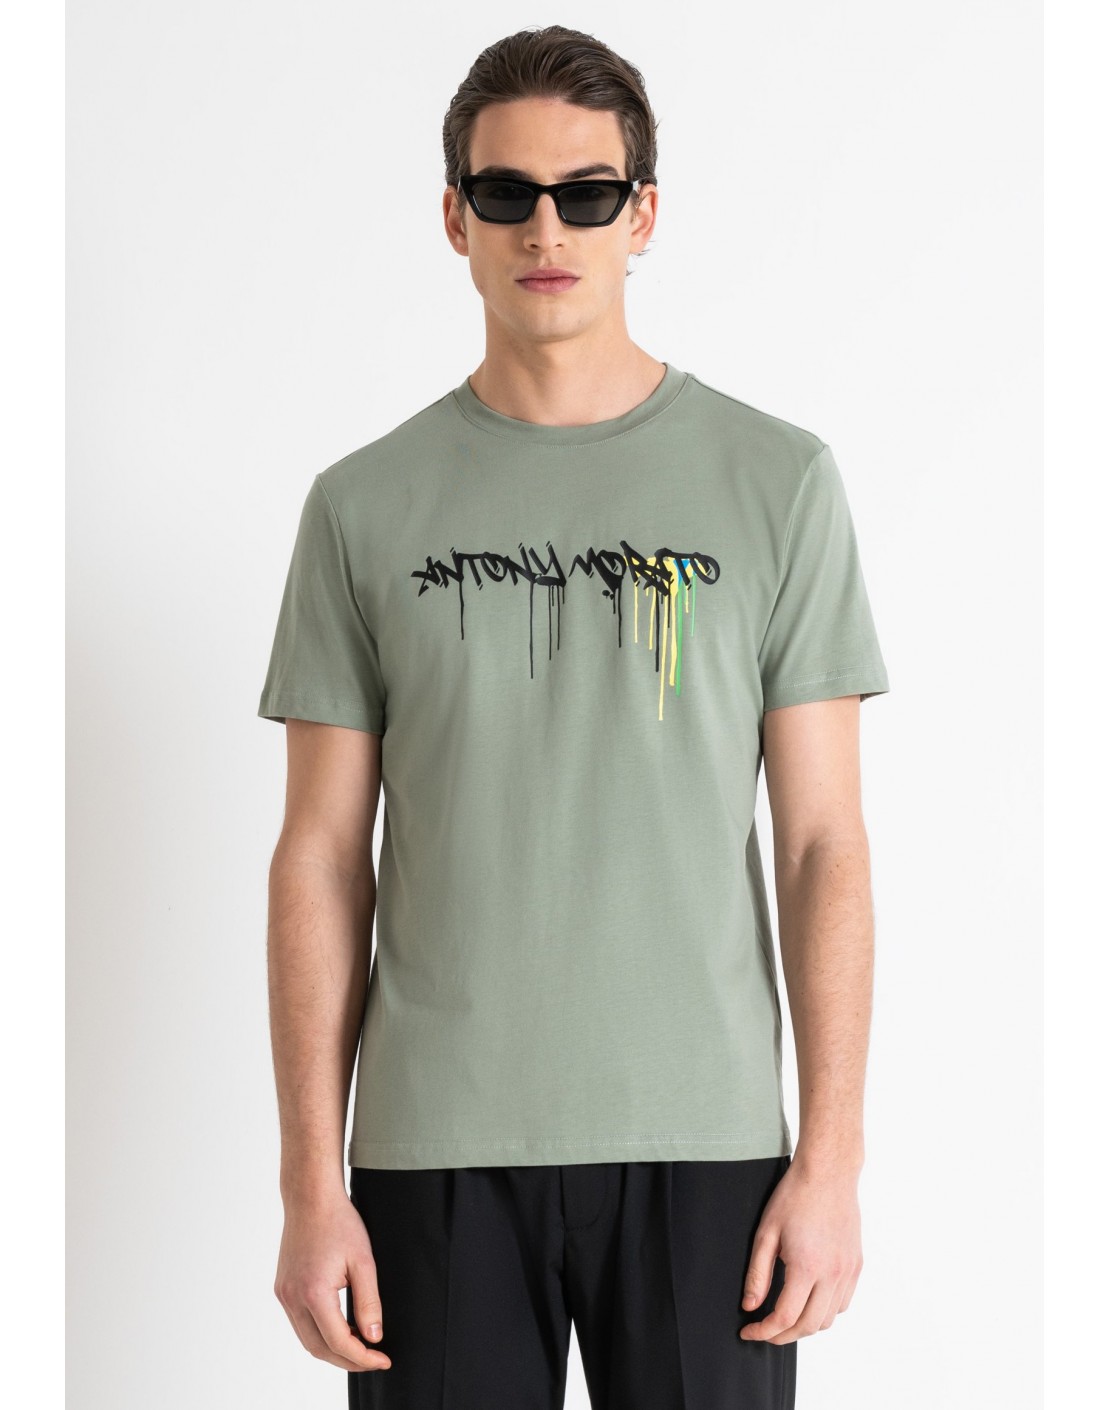 Antony Morato Camiseta Slim Fit de punto de algodón con logotipo estampado